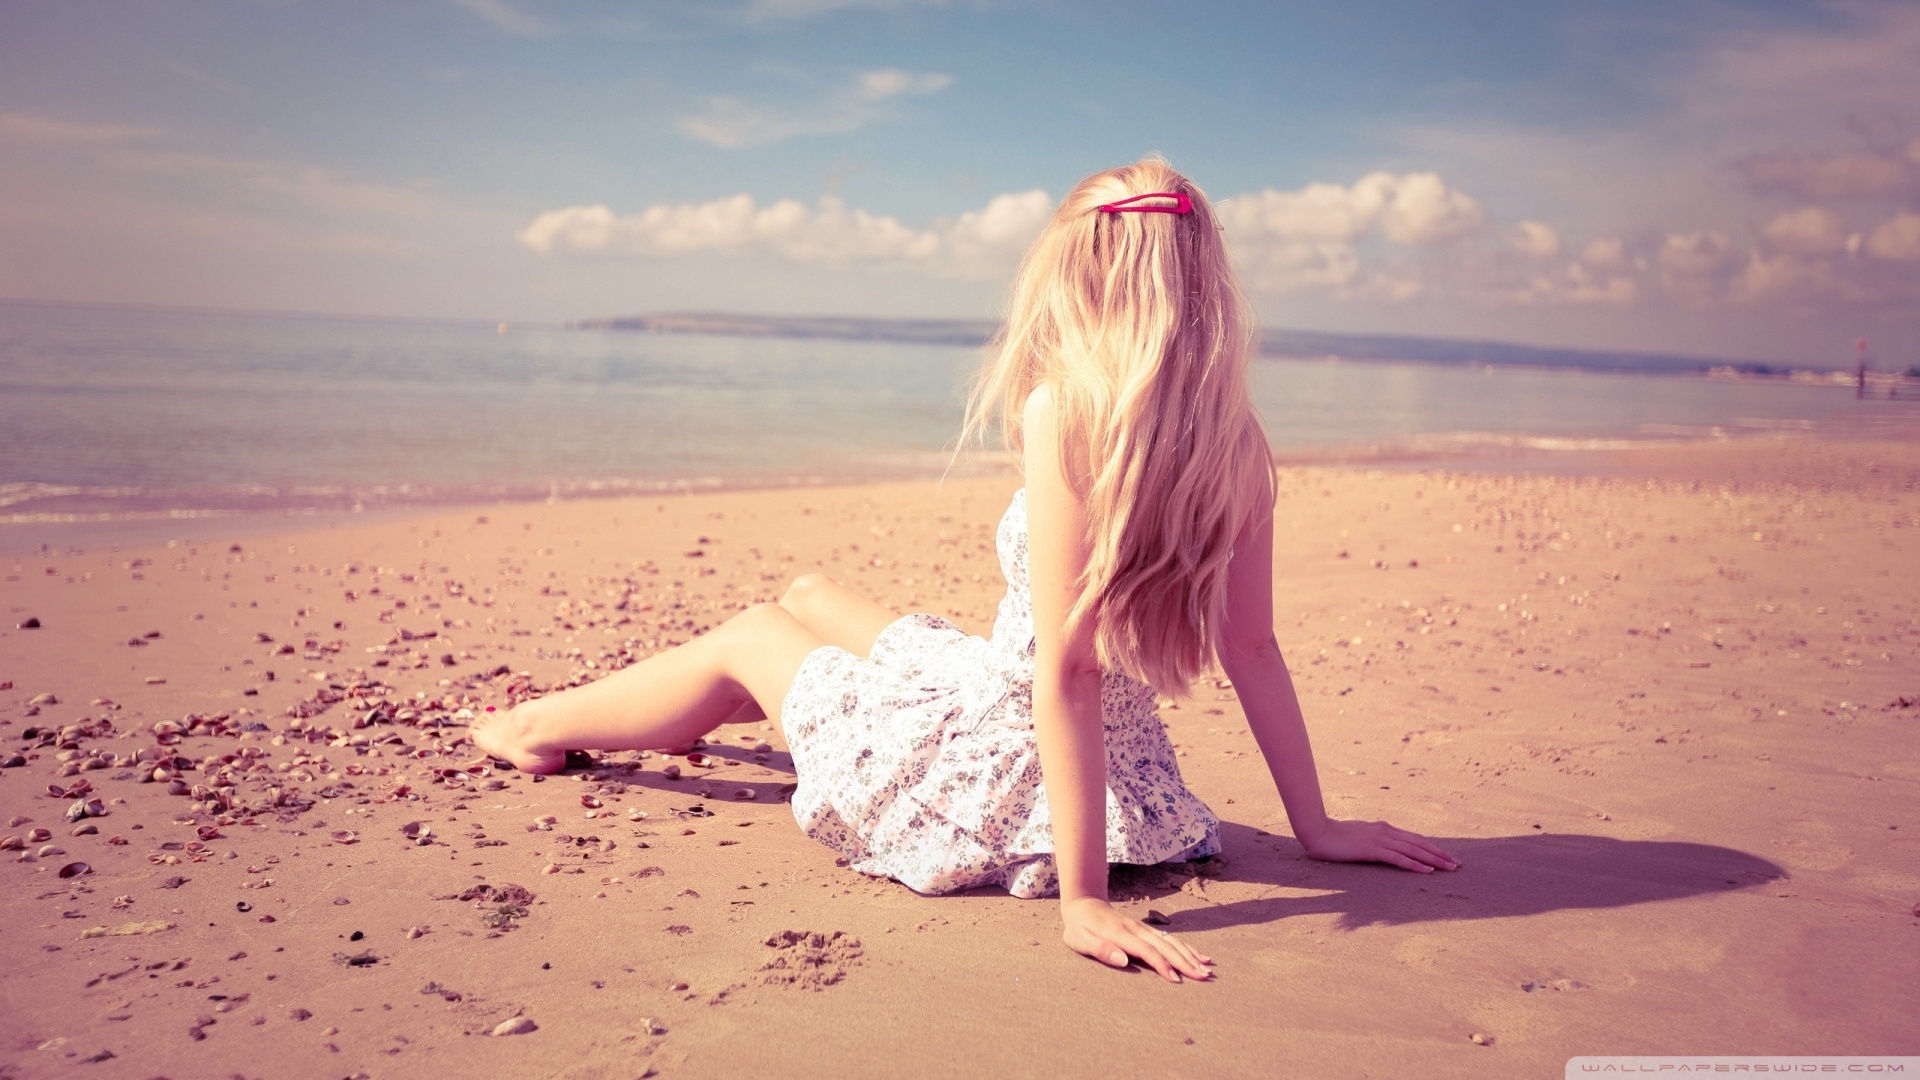 Blonde Girl On The Beach HD desktop wallpaper : High Definition